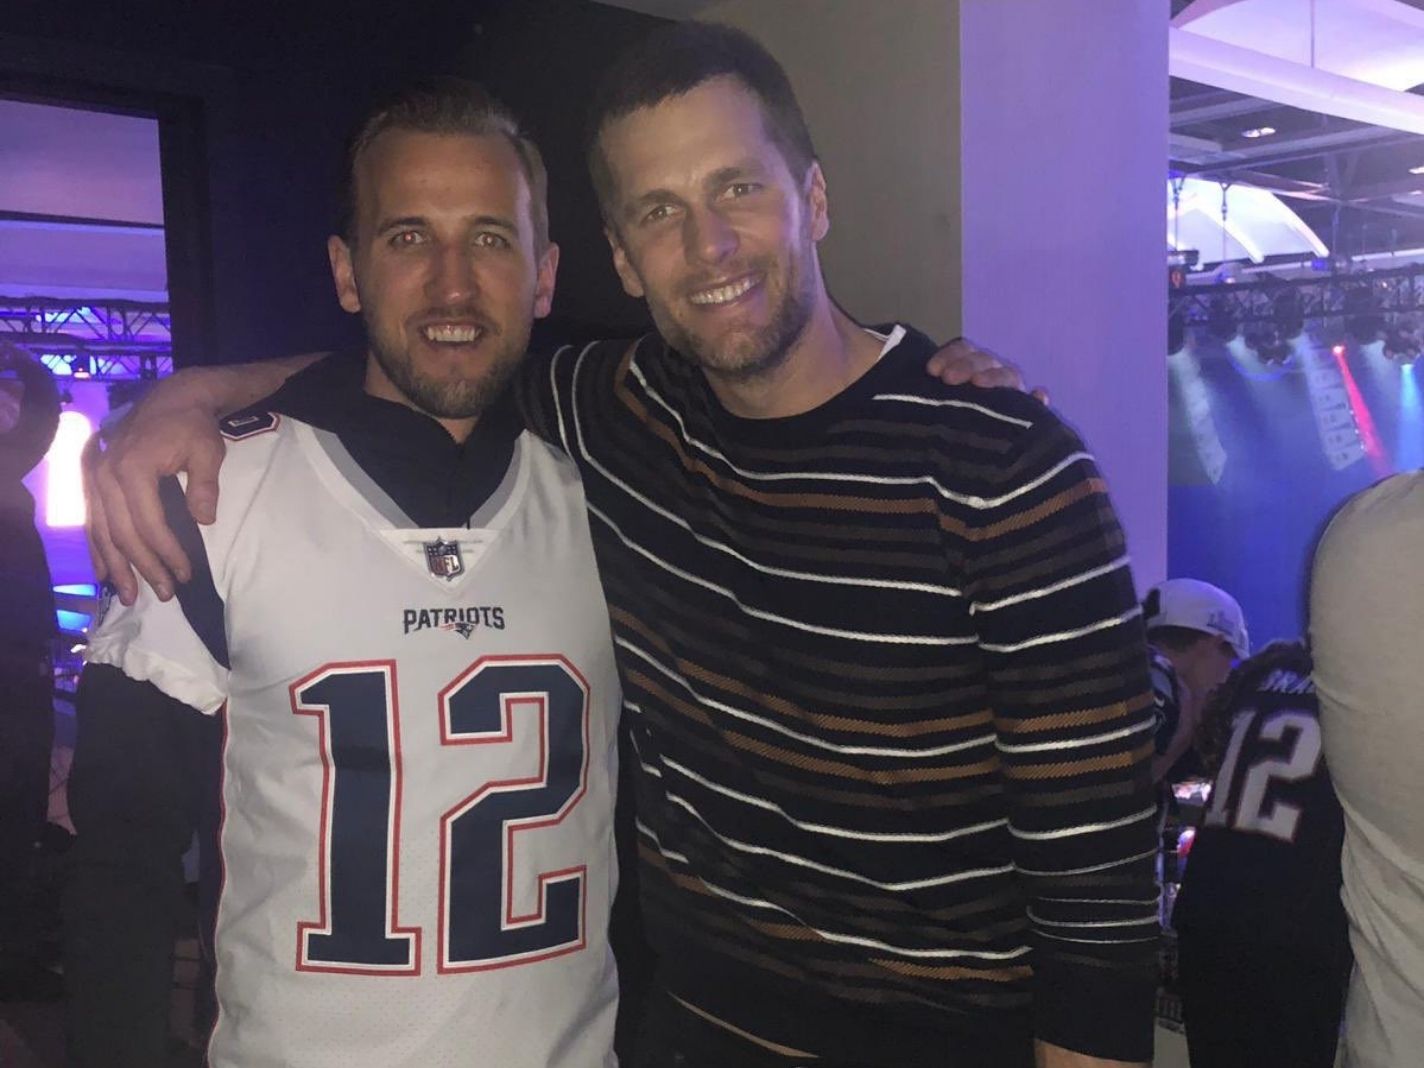 Harry Kane in Patriots gear with Tom Brady